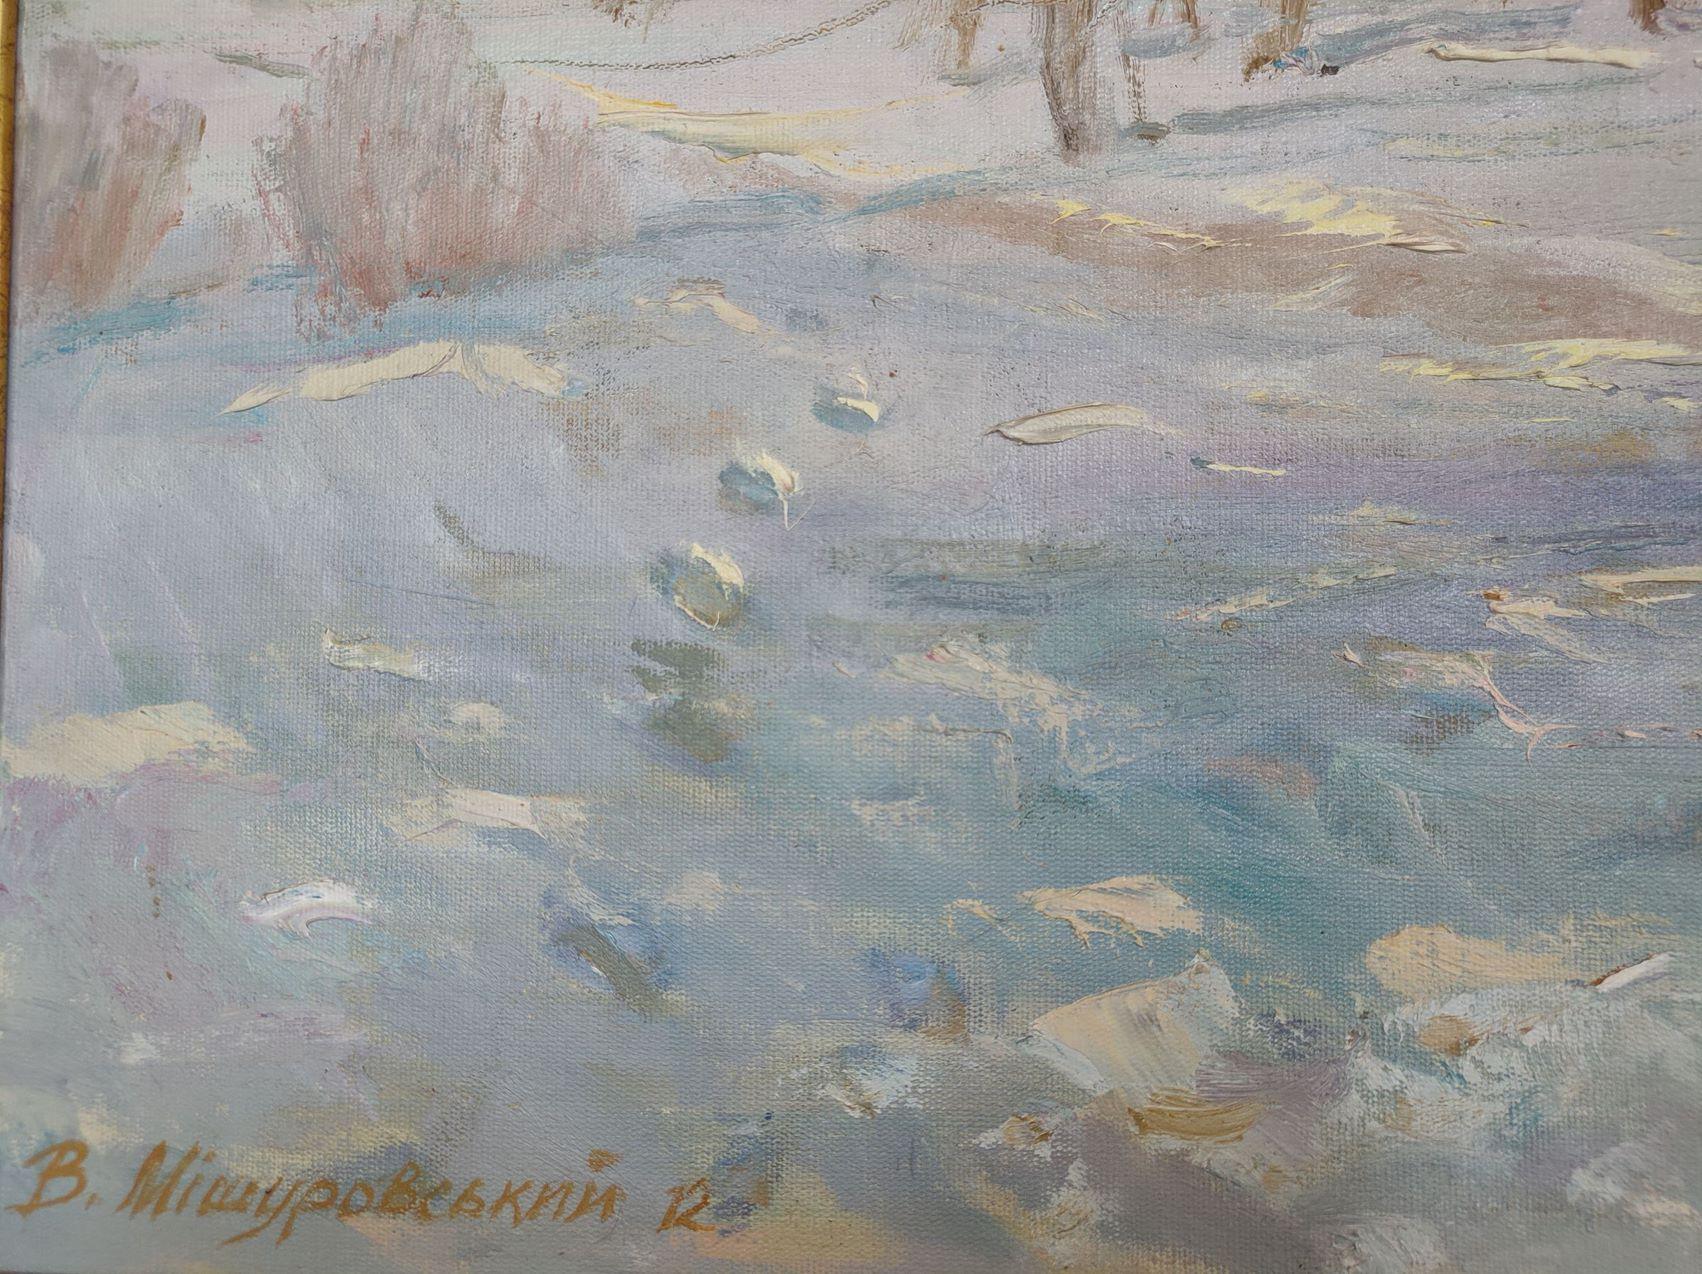 Schnee und Sonne, Original Ölgemälde, hängefertig (Impressionismus), Painting, von Mishurovskiy V.